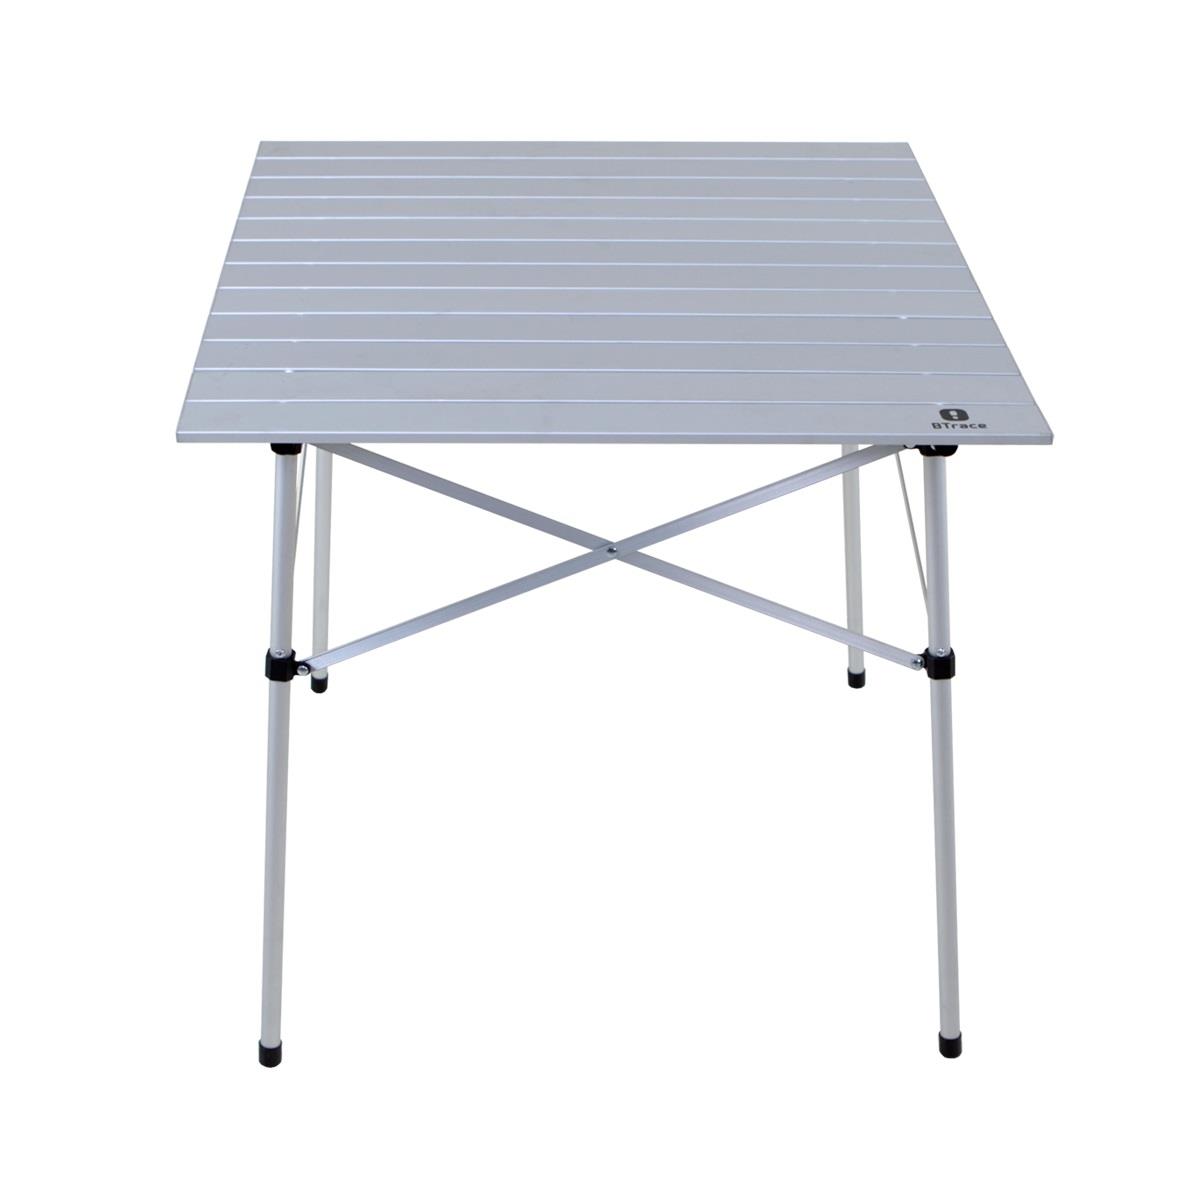 Стол складной Qick table 70 (F0500) BTrace тубус 63х350 мм 330 мм внутр высота под футболку картон металлическая крышка